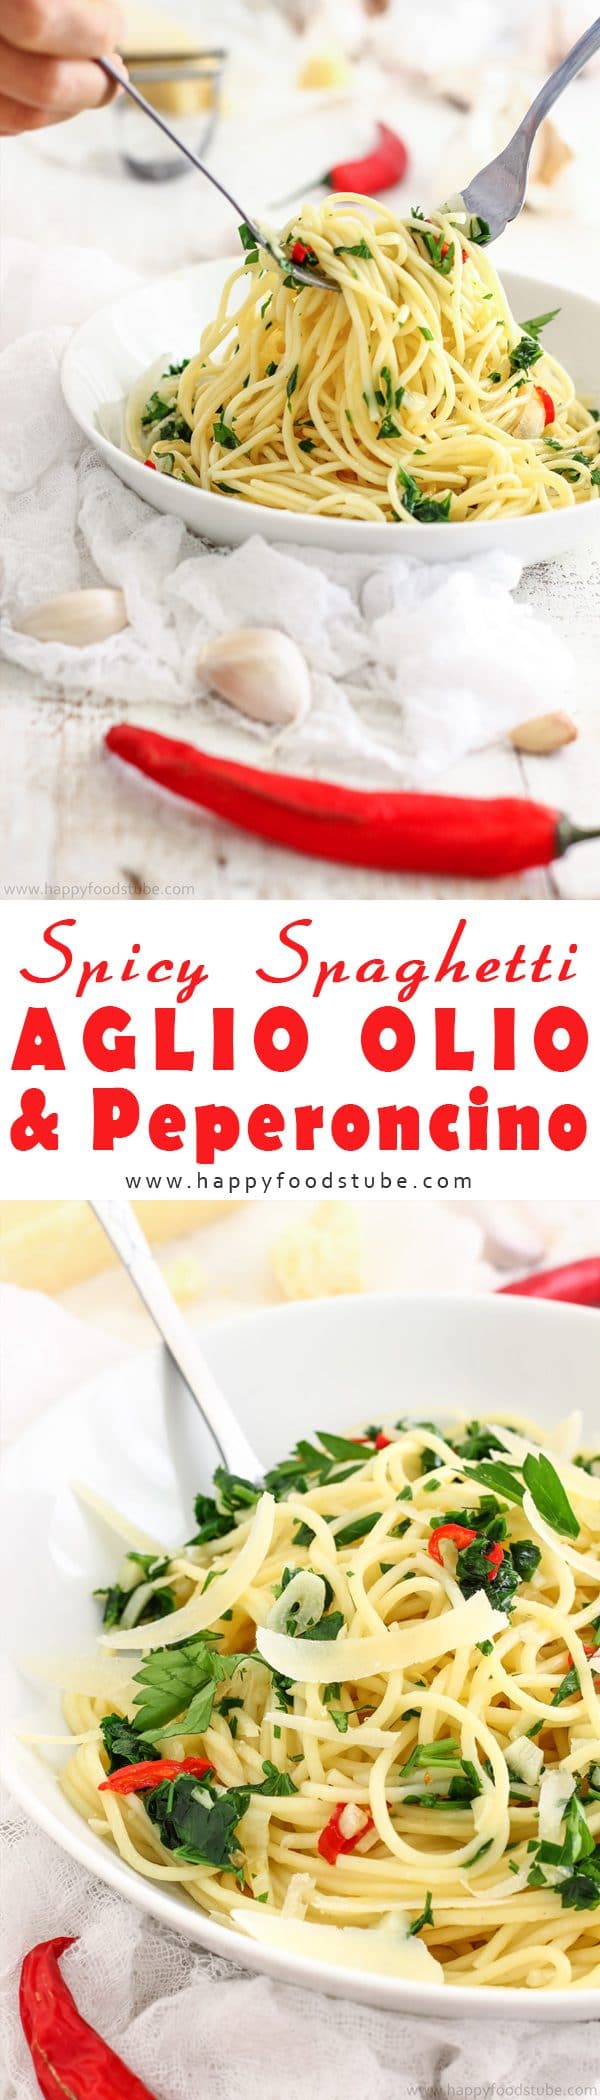 Spicy Spaghetti Aglio Olio & Peperoncino Recipe